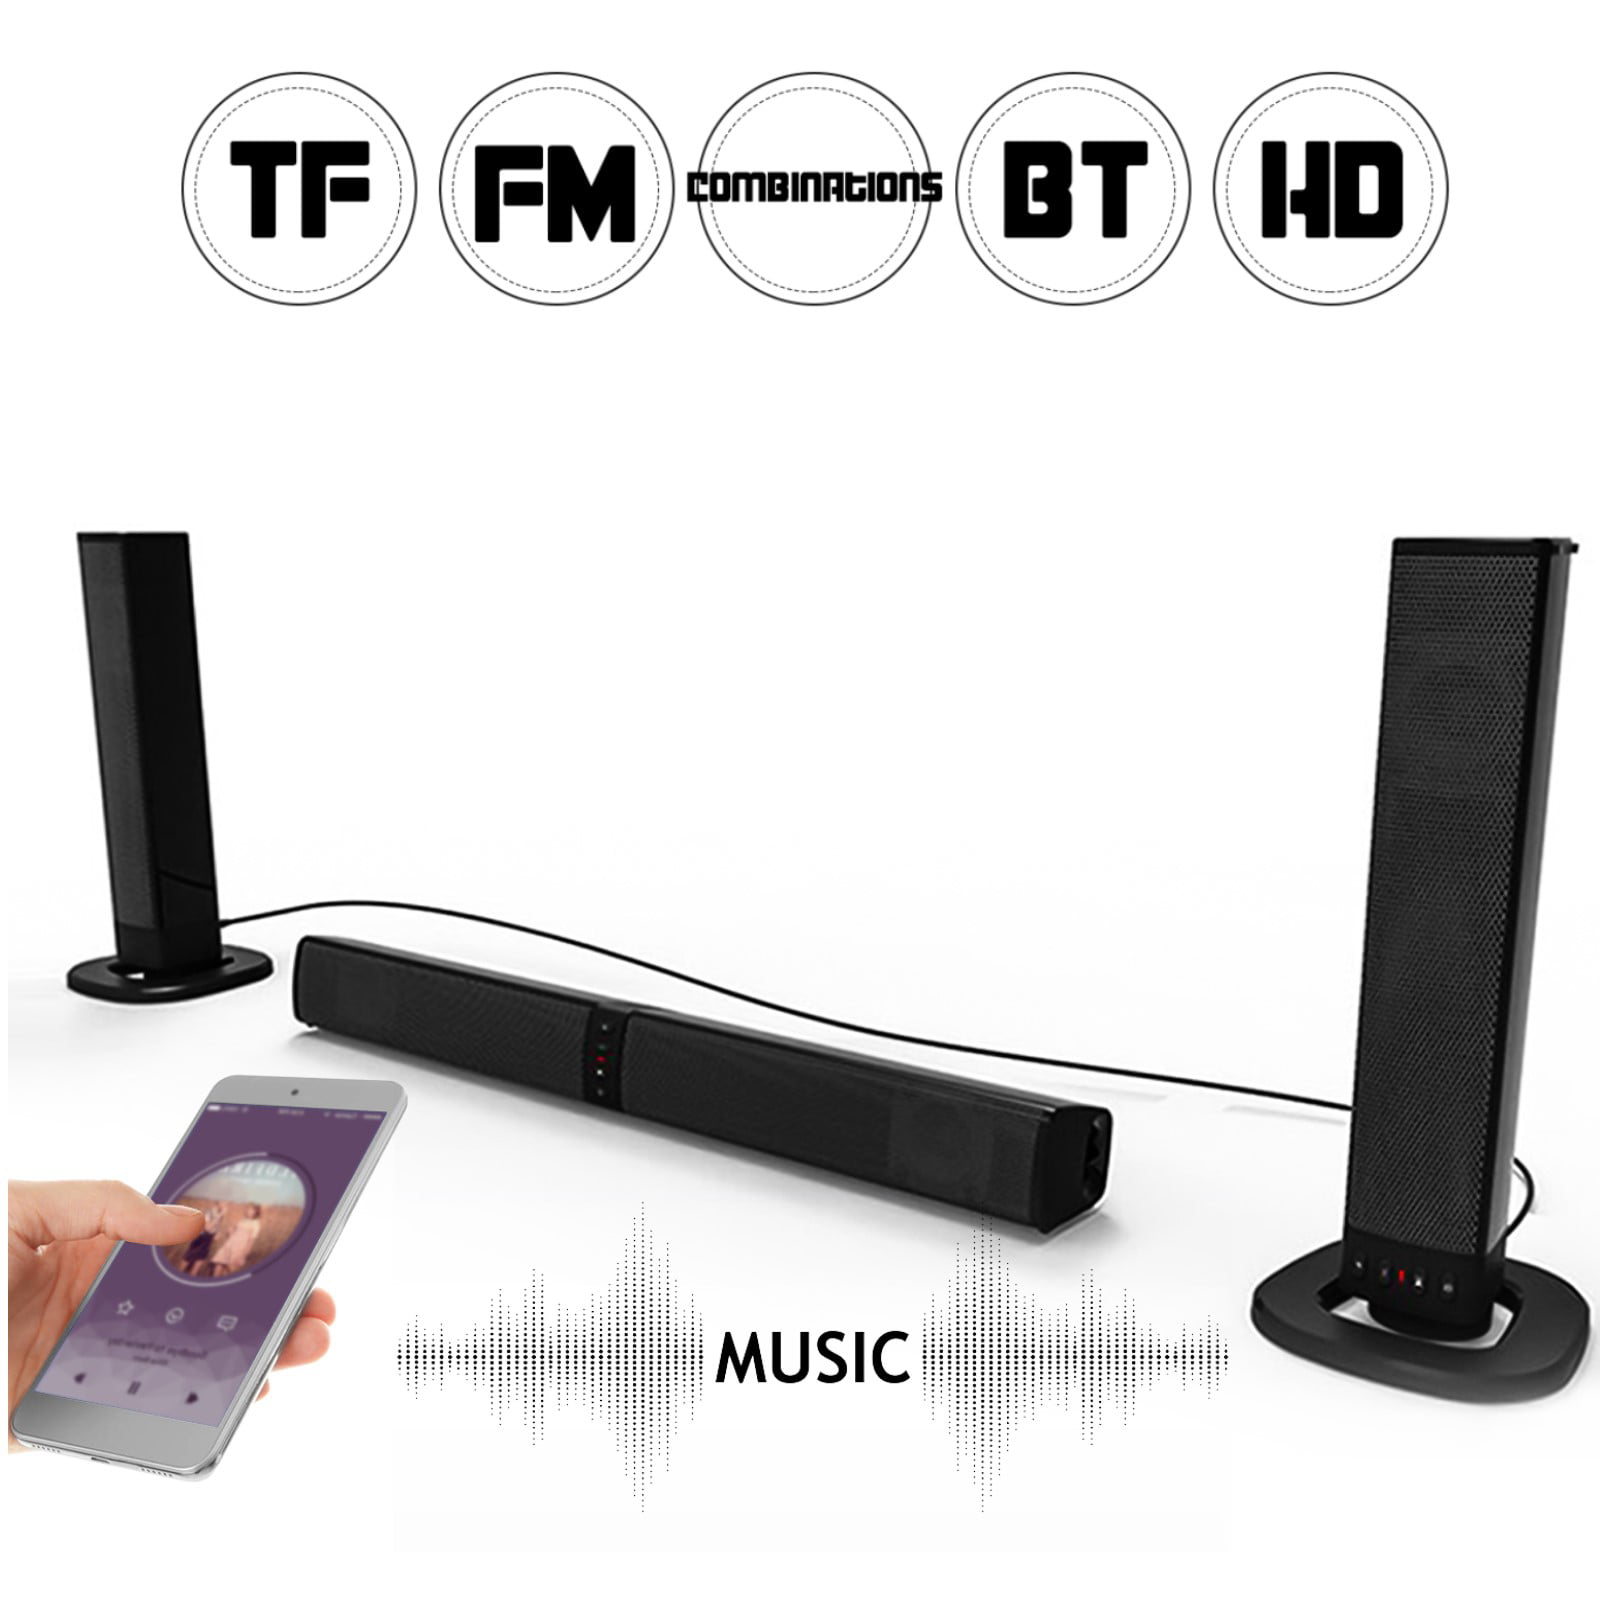 Sound Bar Bluetooth Wireless Wired, Built In Surround Sound Speakers